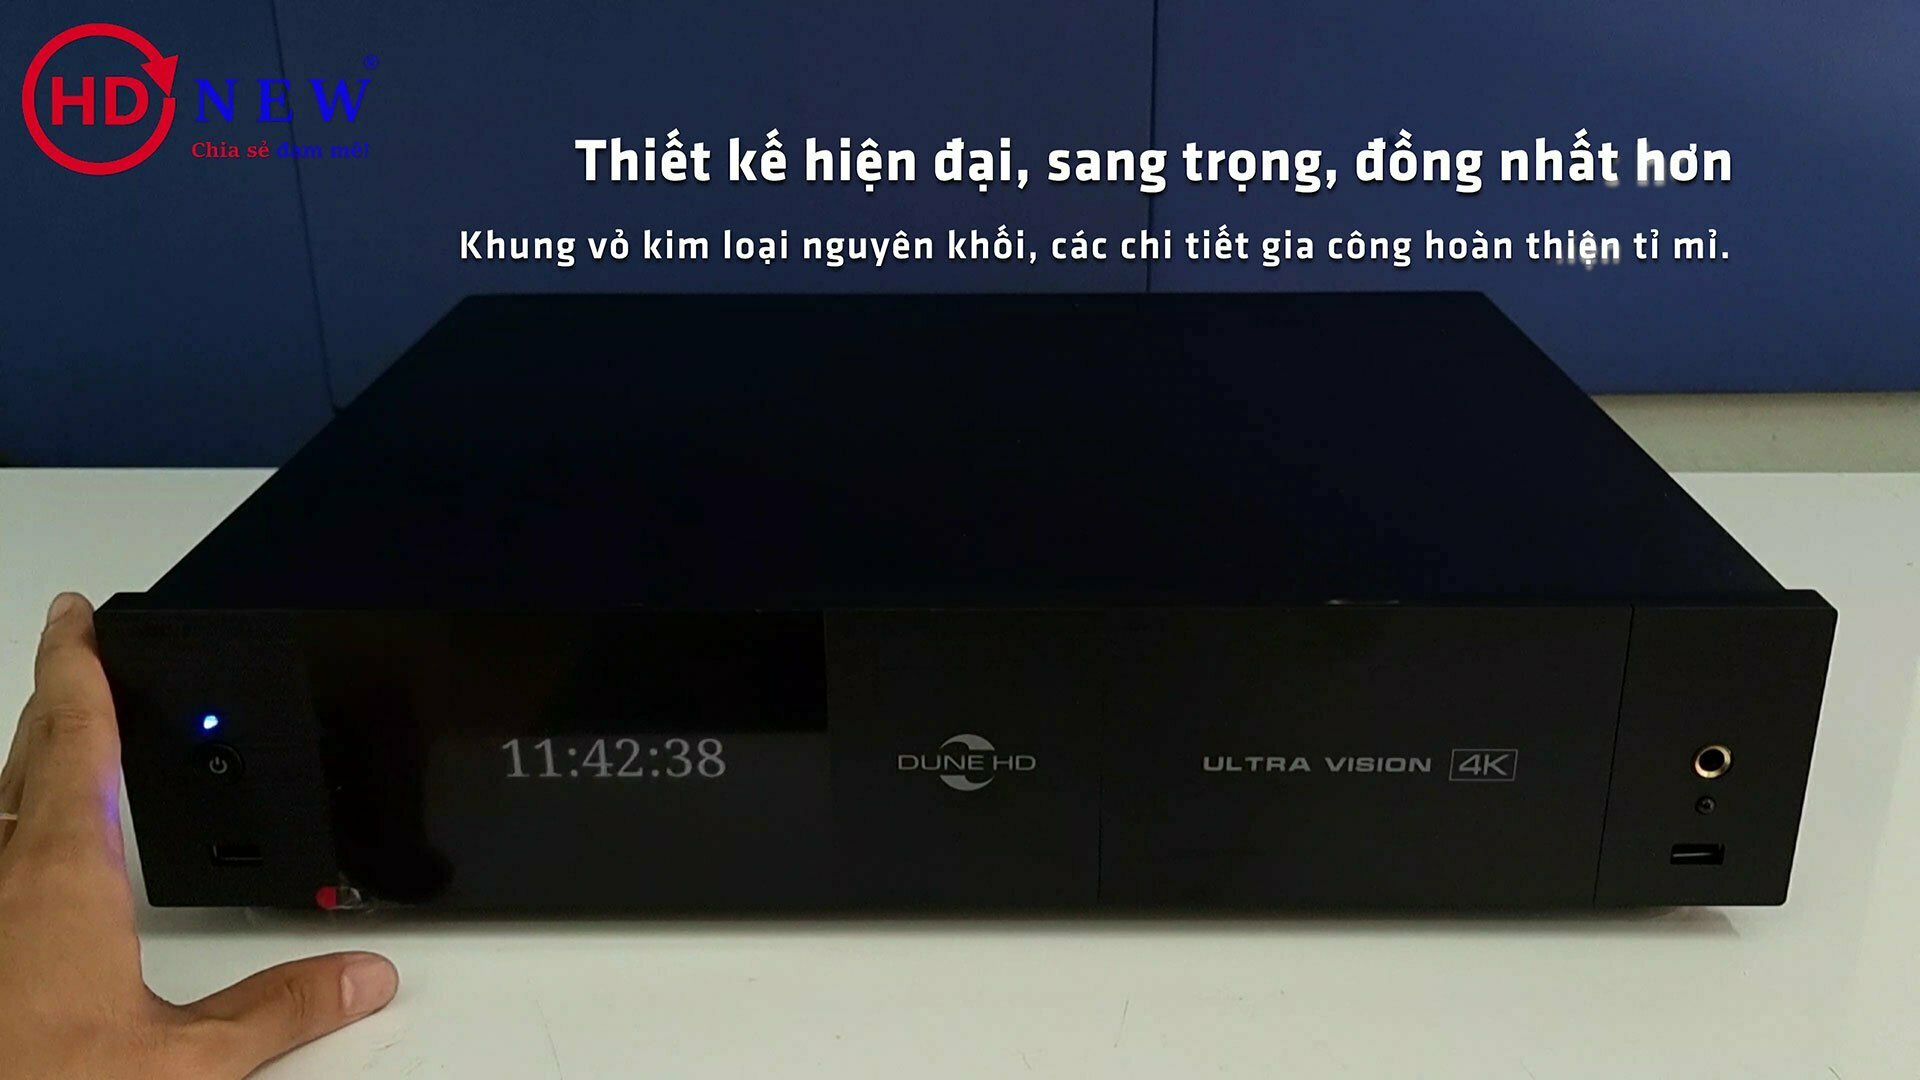 Những điều cần biết trước khi chọn mua Dune HD Ultra Vision 4K - Siêu phẩm giải trí 2021! | Dune HD Vietnam